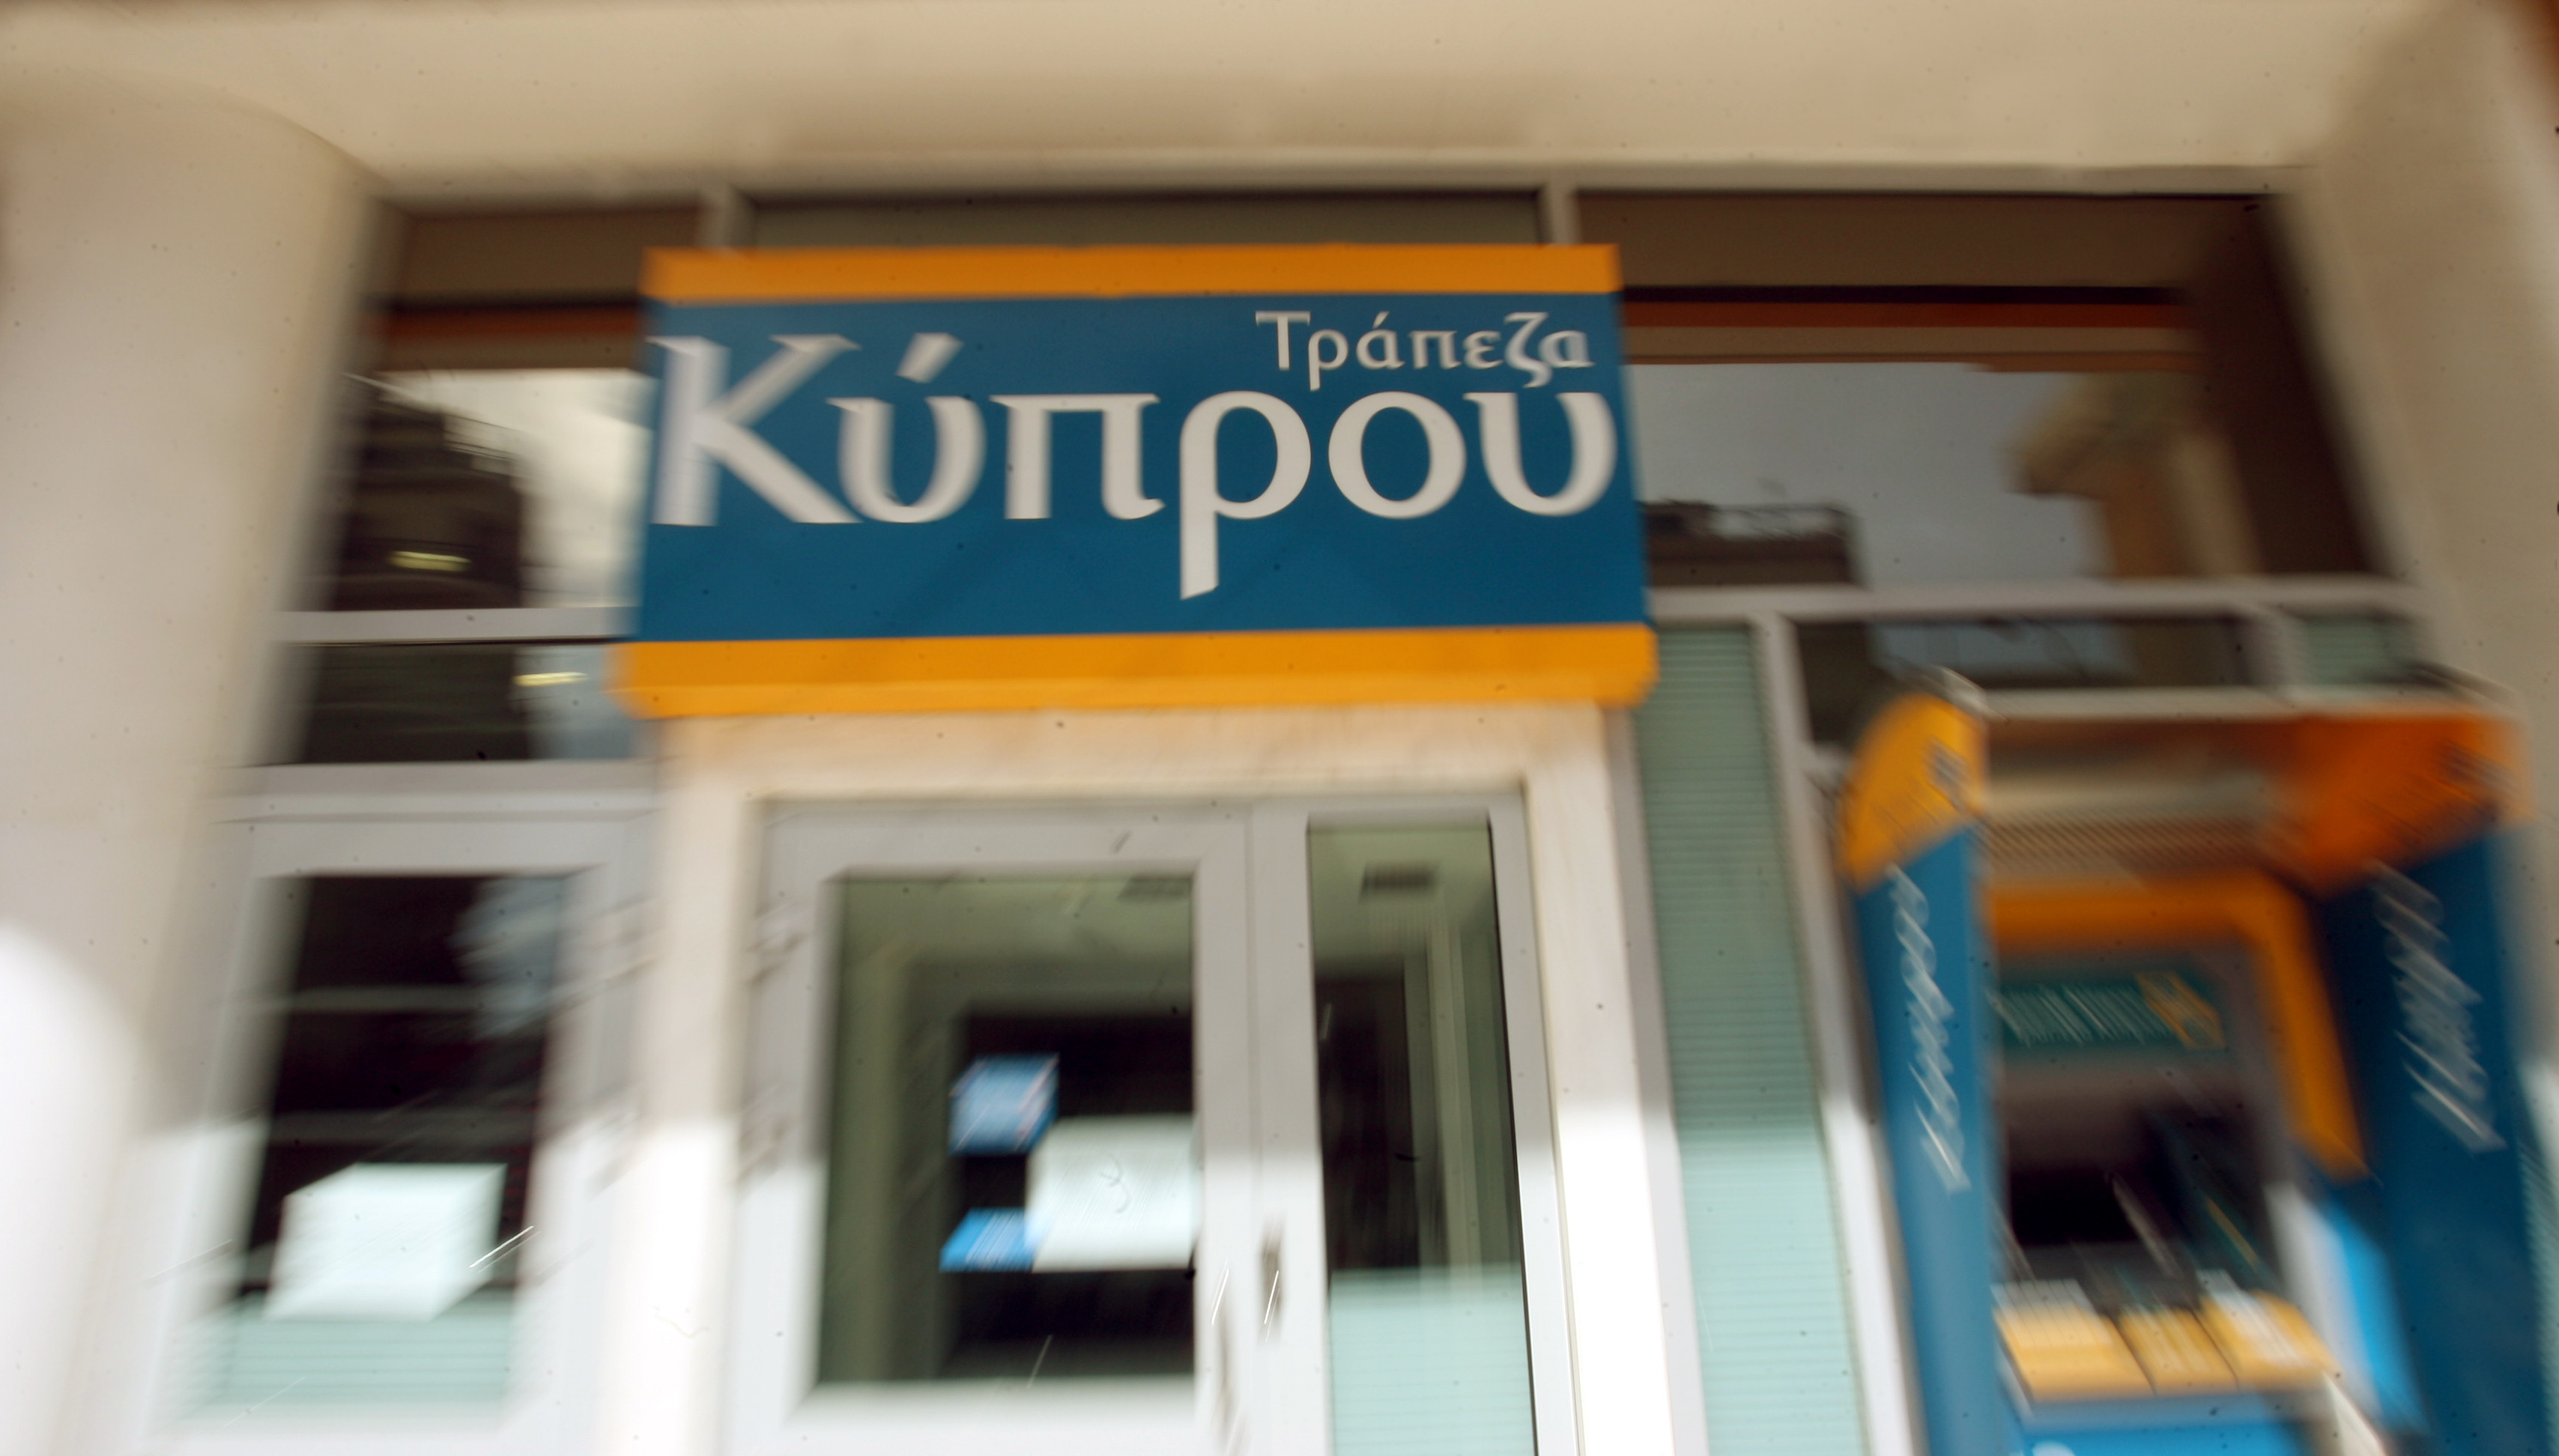 Συμφωνία για μειώσεις μισθών έως 30% στην Τράπεζα Κύπρου